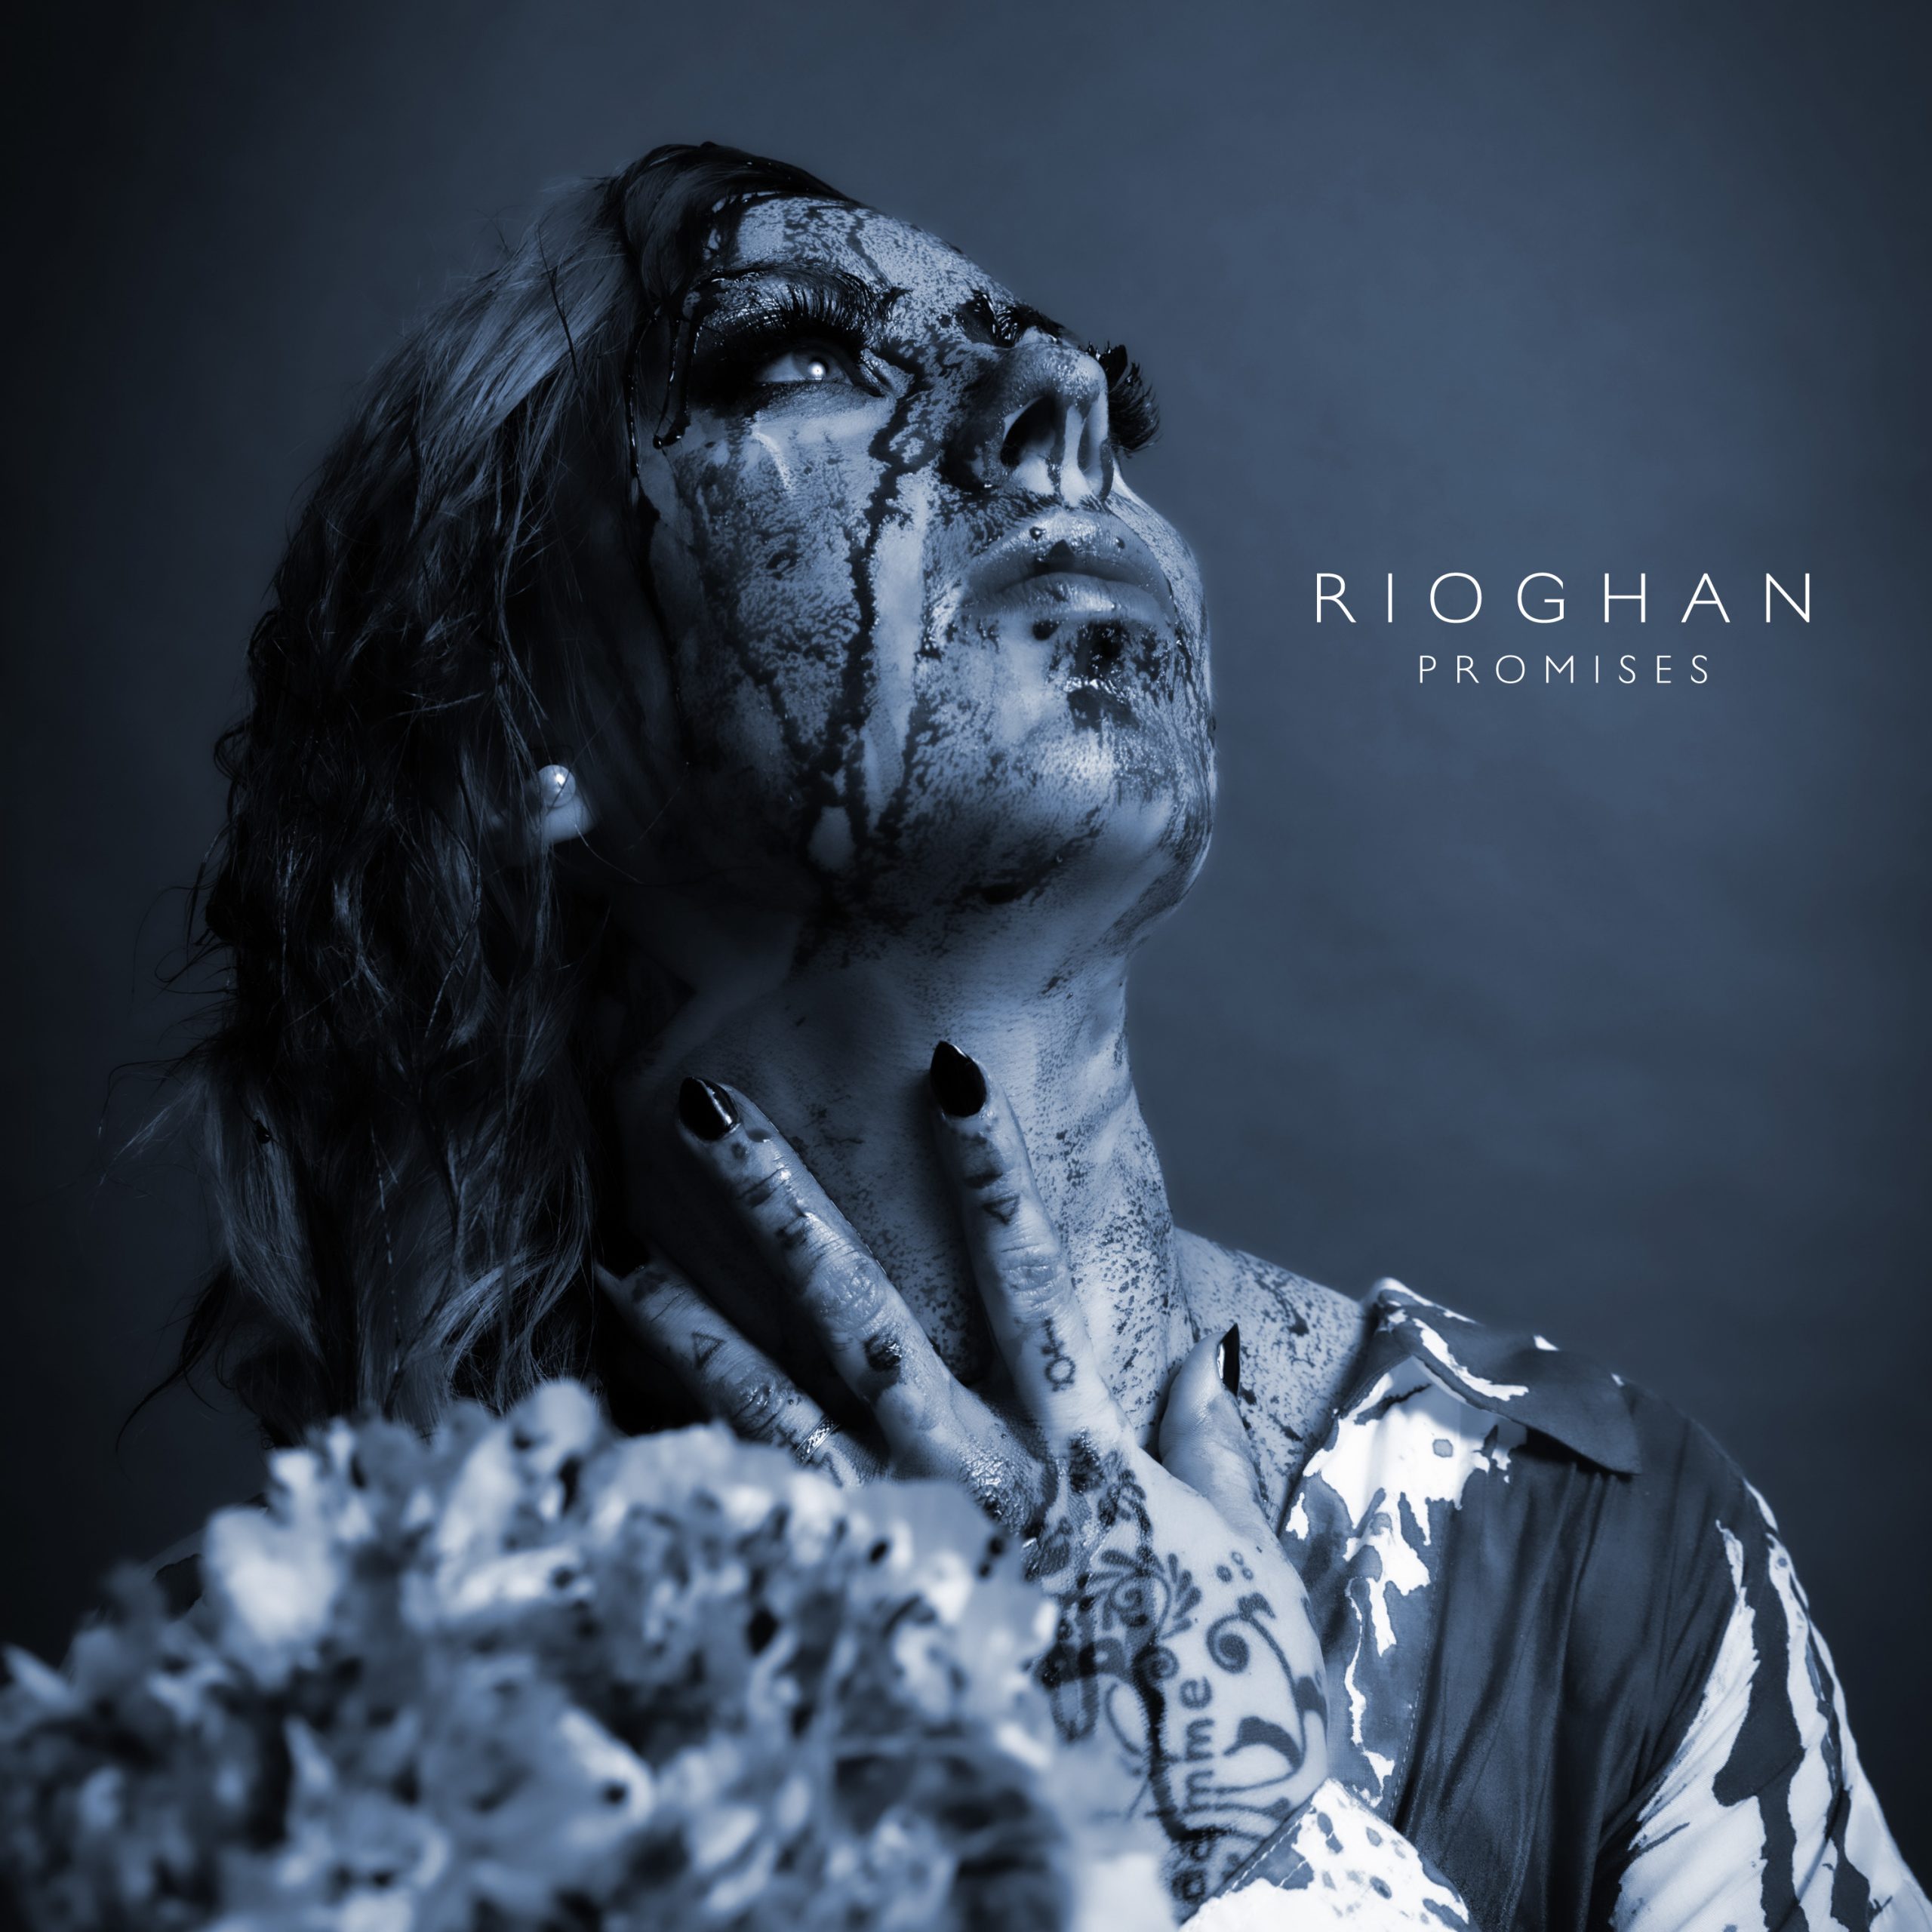 rioghan-neues-musikvideo-zu-promises-online-debuetalbum-noch-in-diesem-jahr